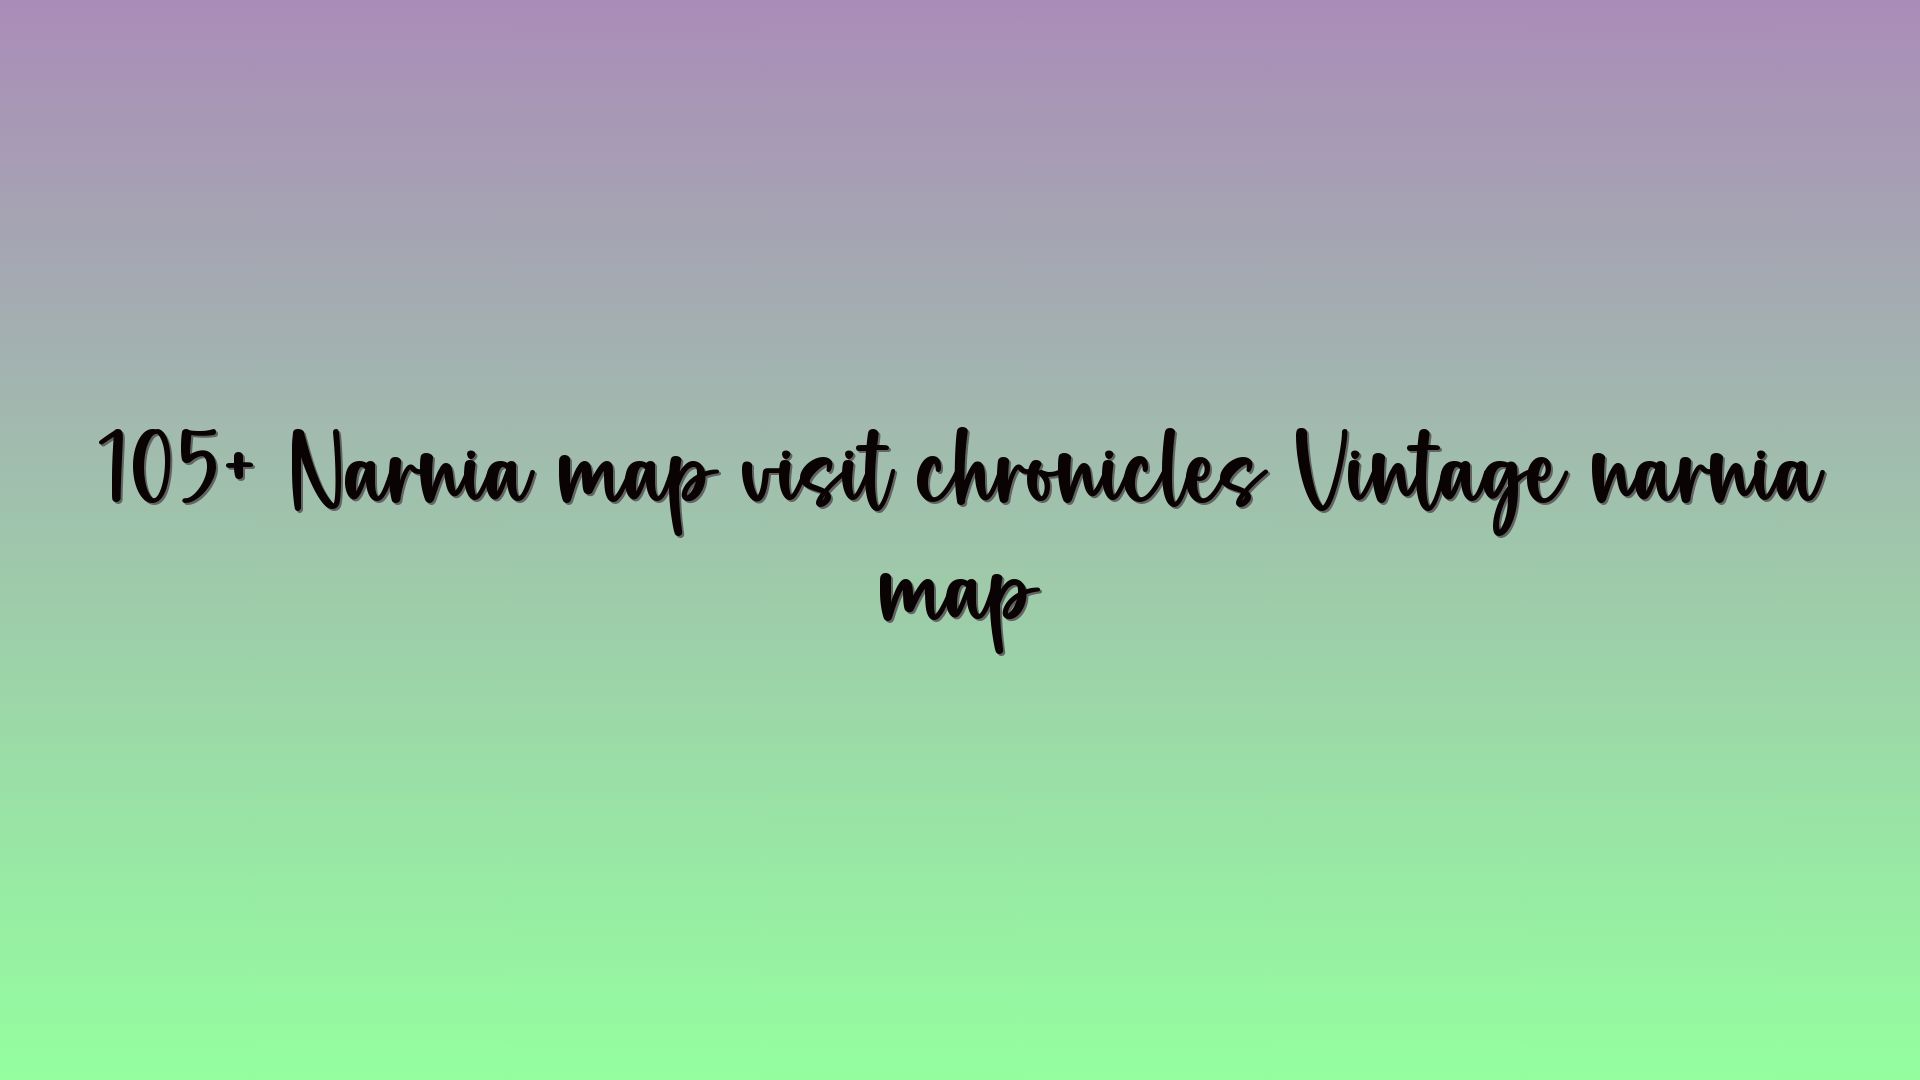 105+ Narnia map visit chronicles Vintage narnia map